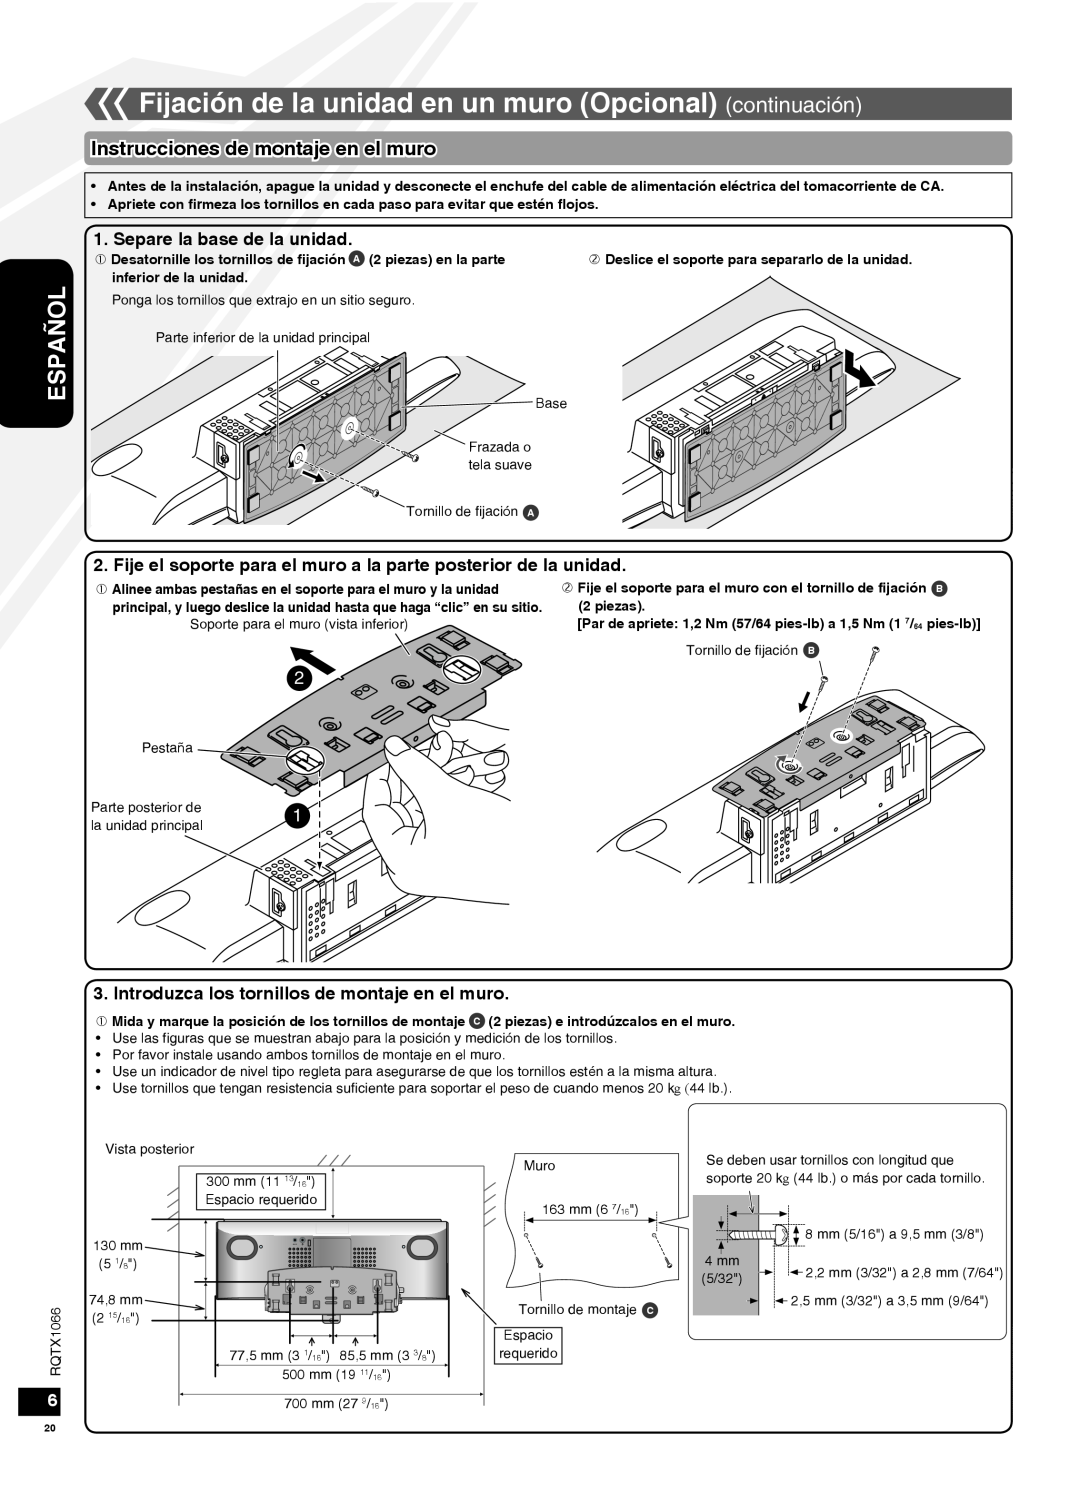 Panasonic SC-HC30 operating instructions Instrucciones de montaje en el muro, Separe la base de la unidad, Español 